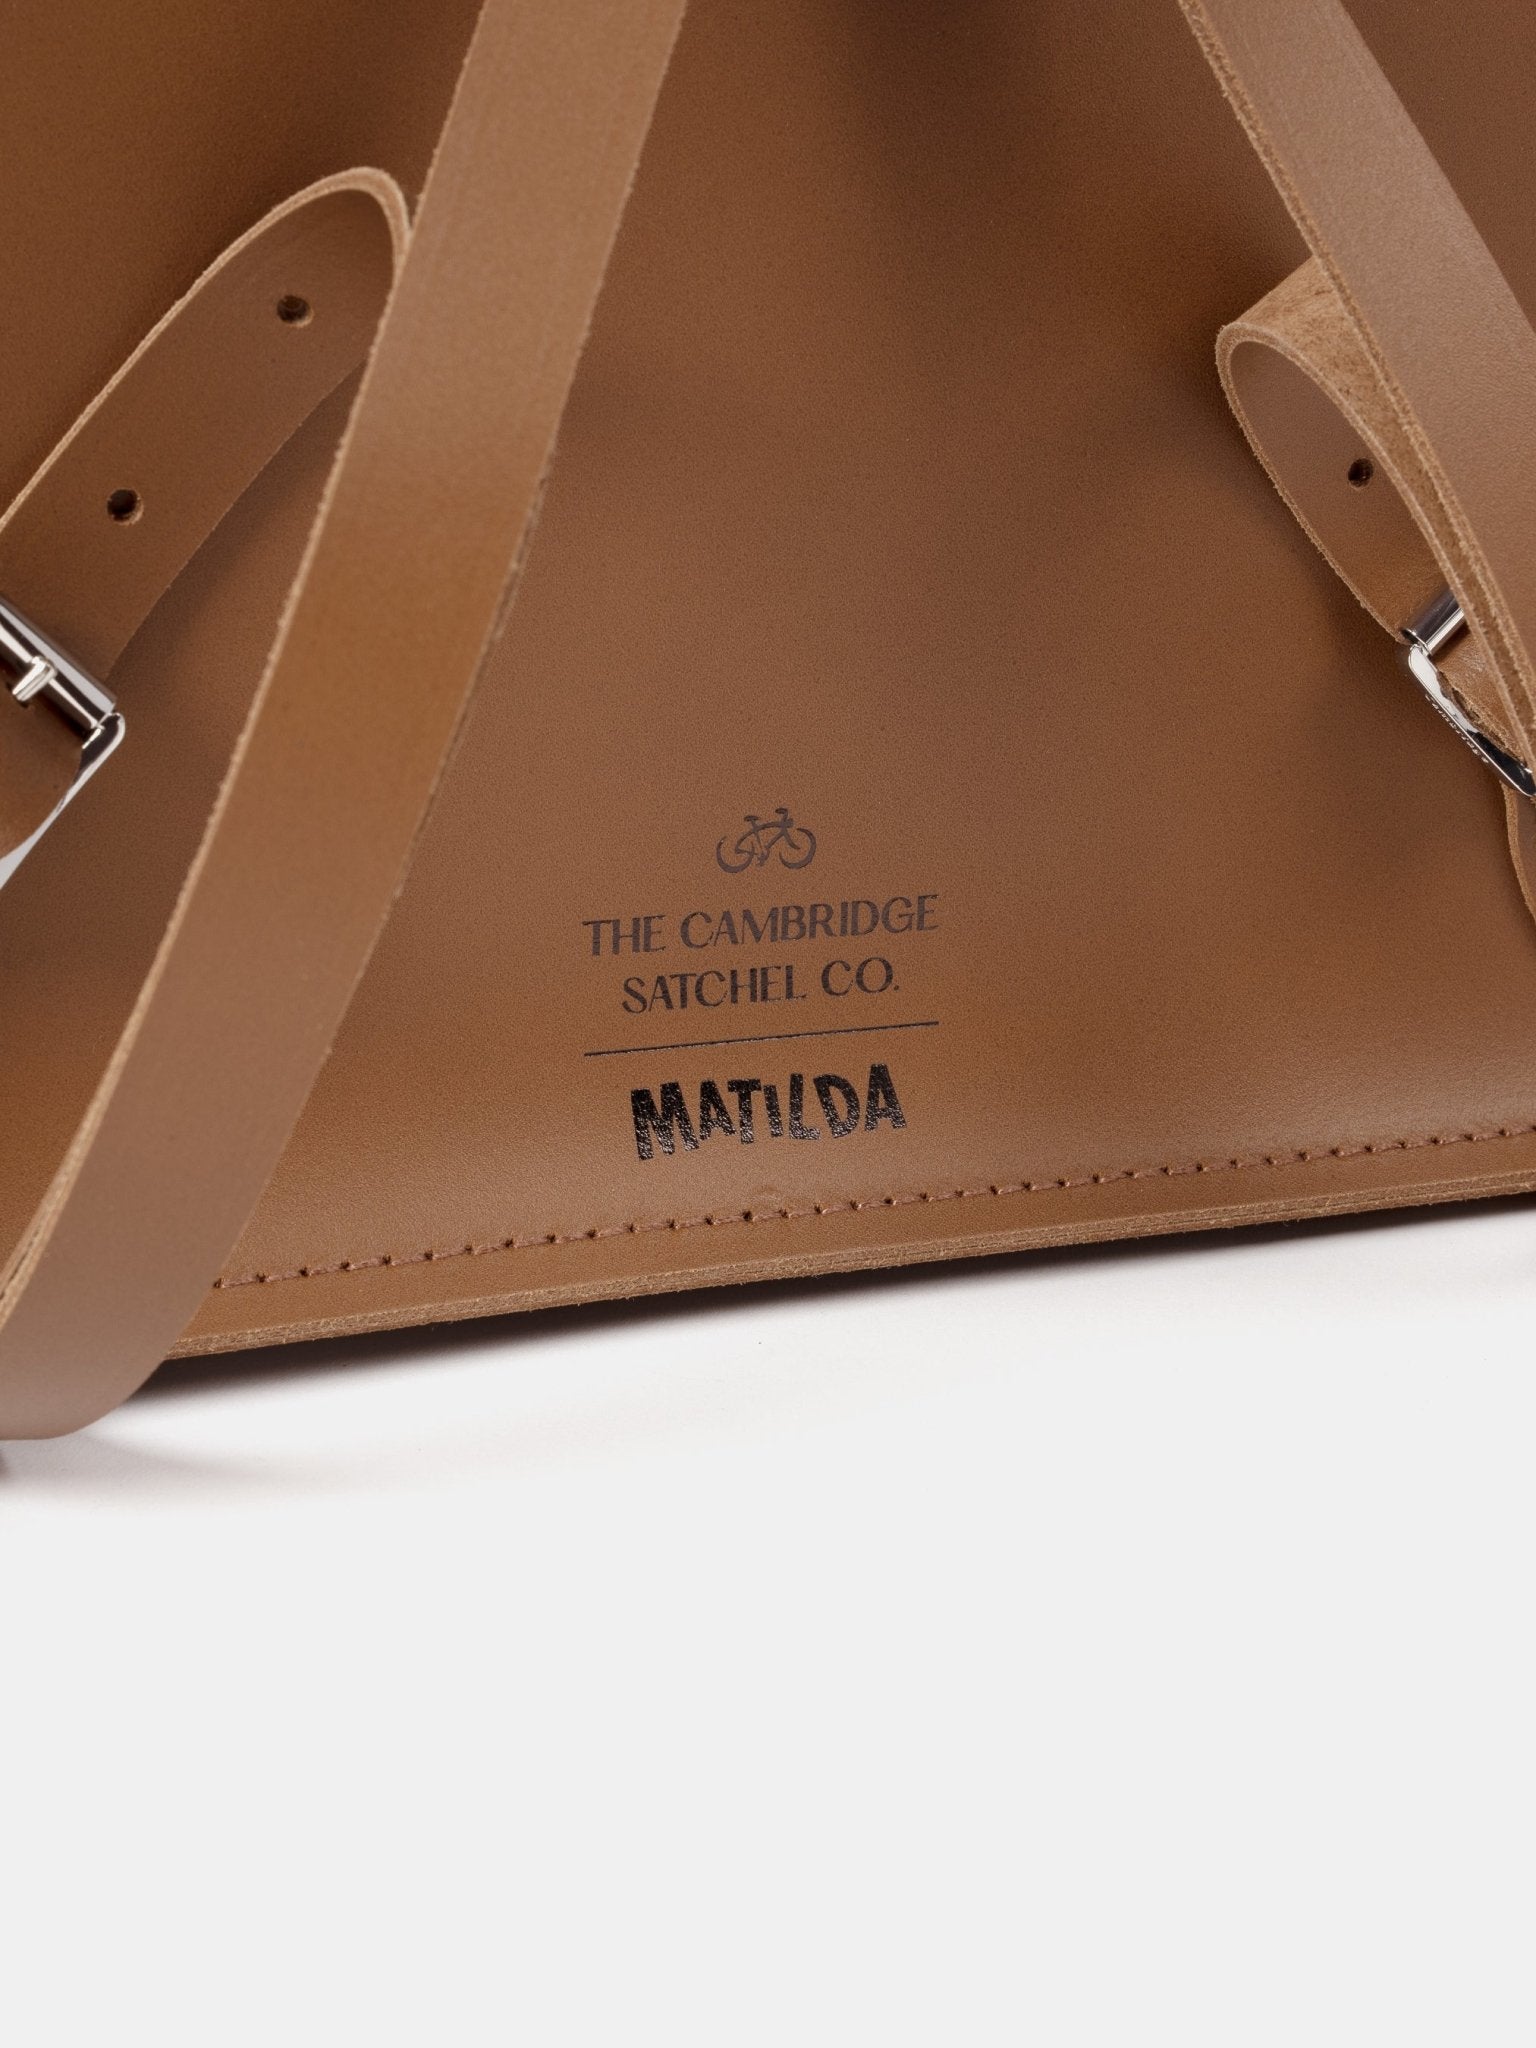 The Matilda Batchel Backpack - Vintage